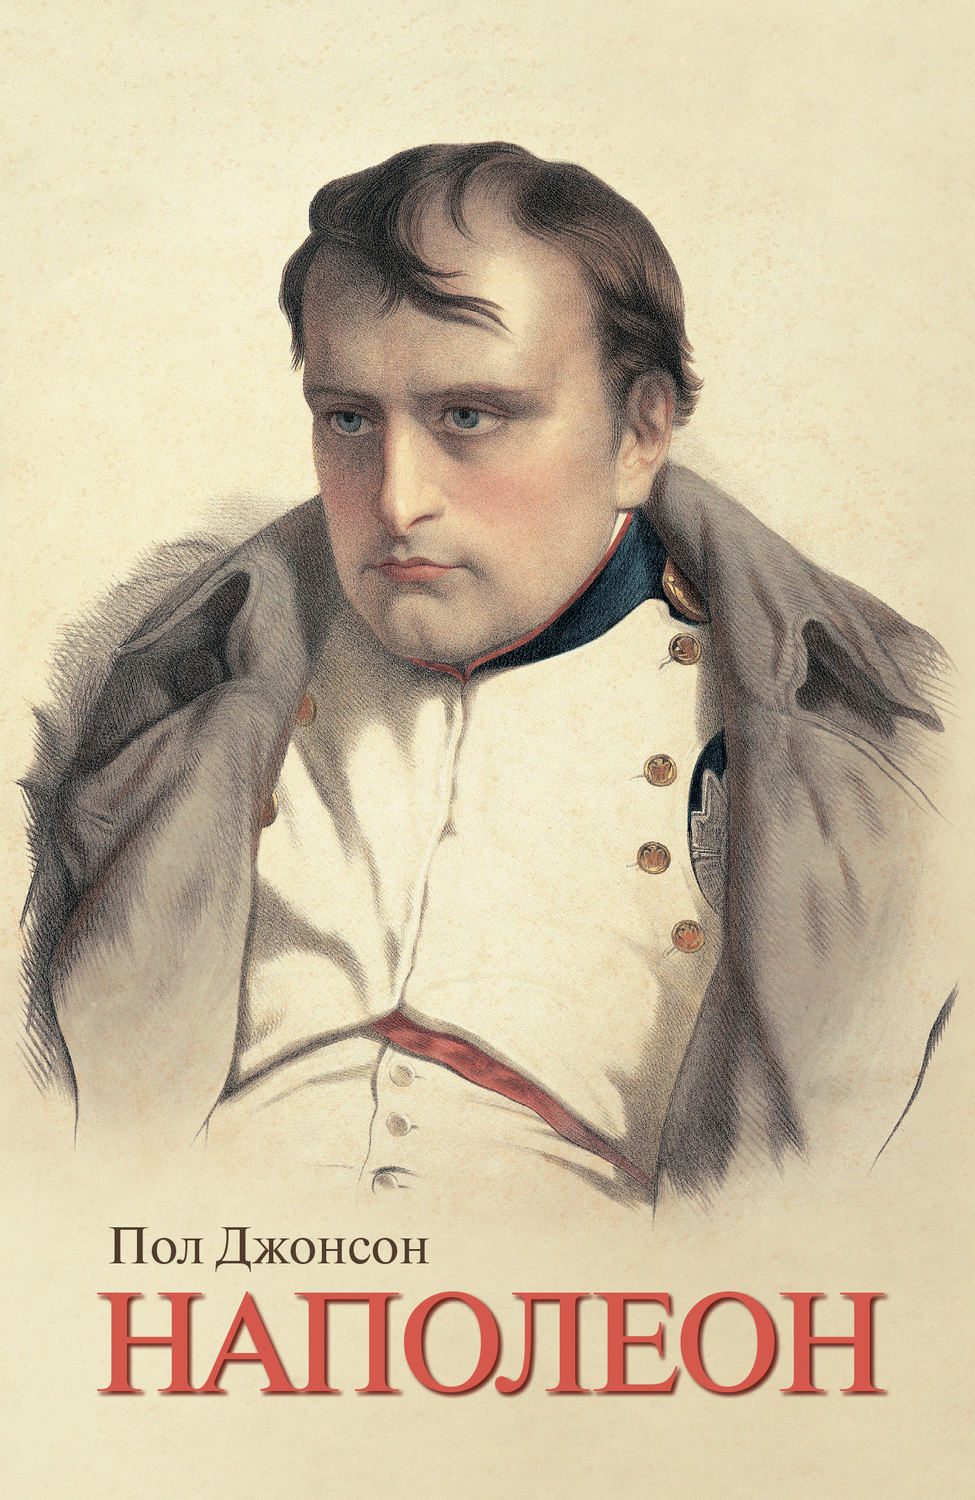 Джонсон Пол - «Наполеон»